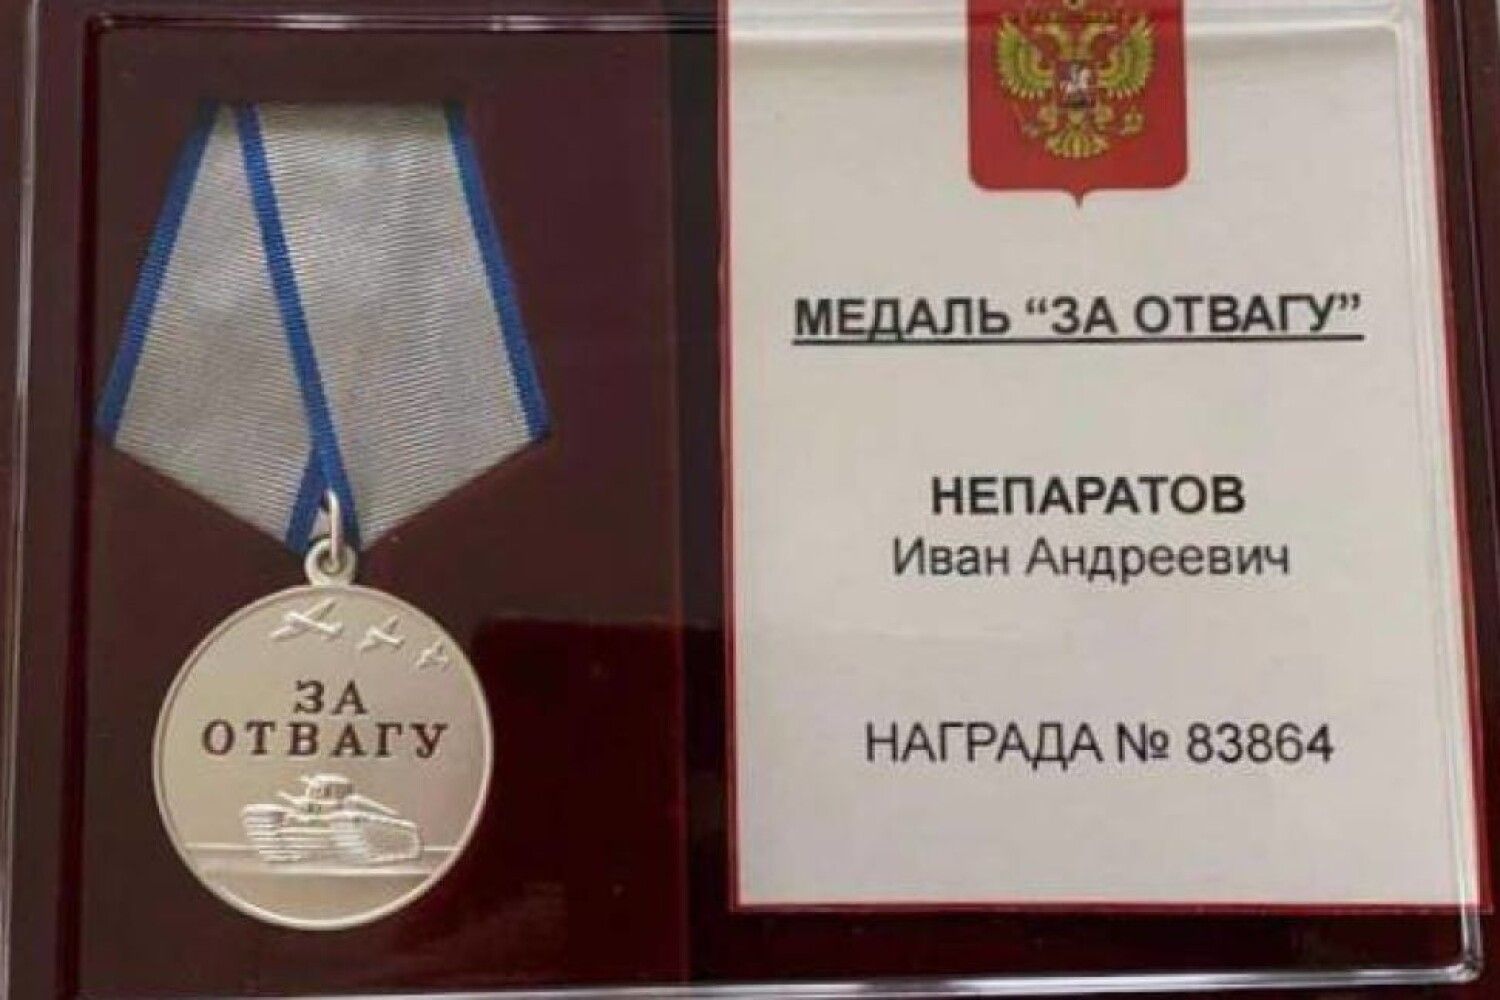 За проявленный и награжден. Медаль за отвагу ЧВК Вагнер. Награда медаль за отвагу. Медаль за мужество и отвагу посмертно. Медаль за отвагу Украина 2022.